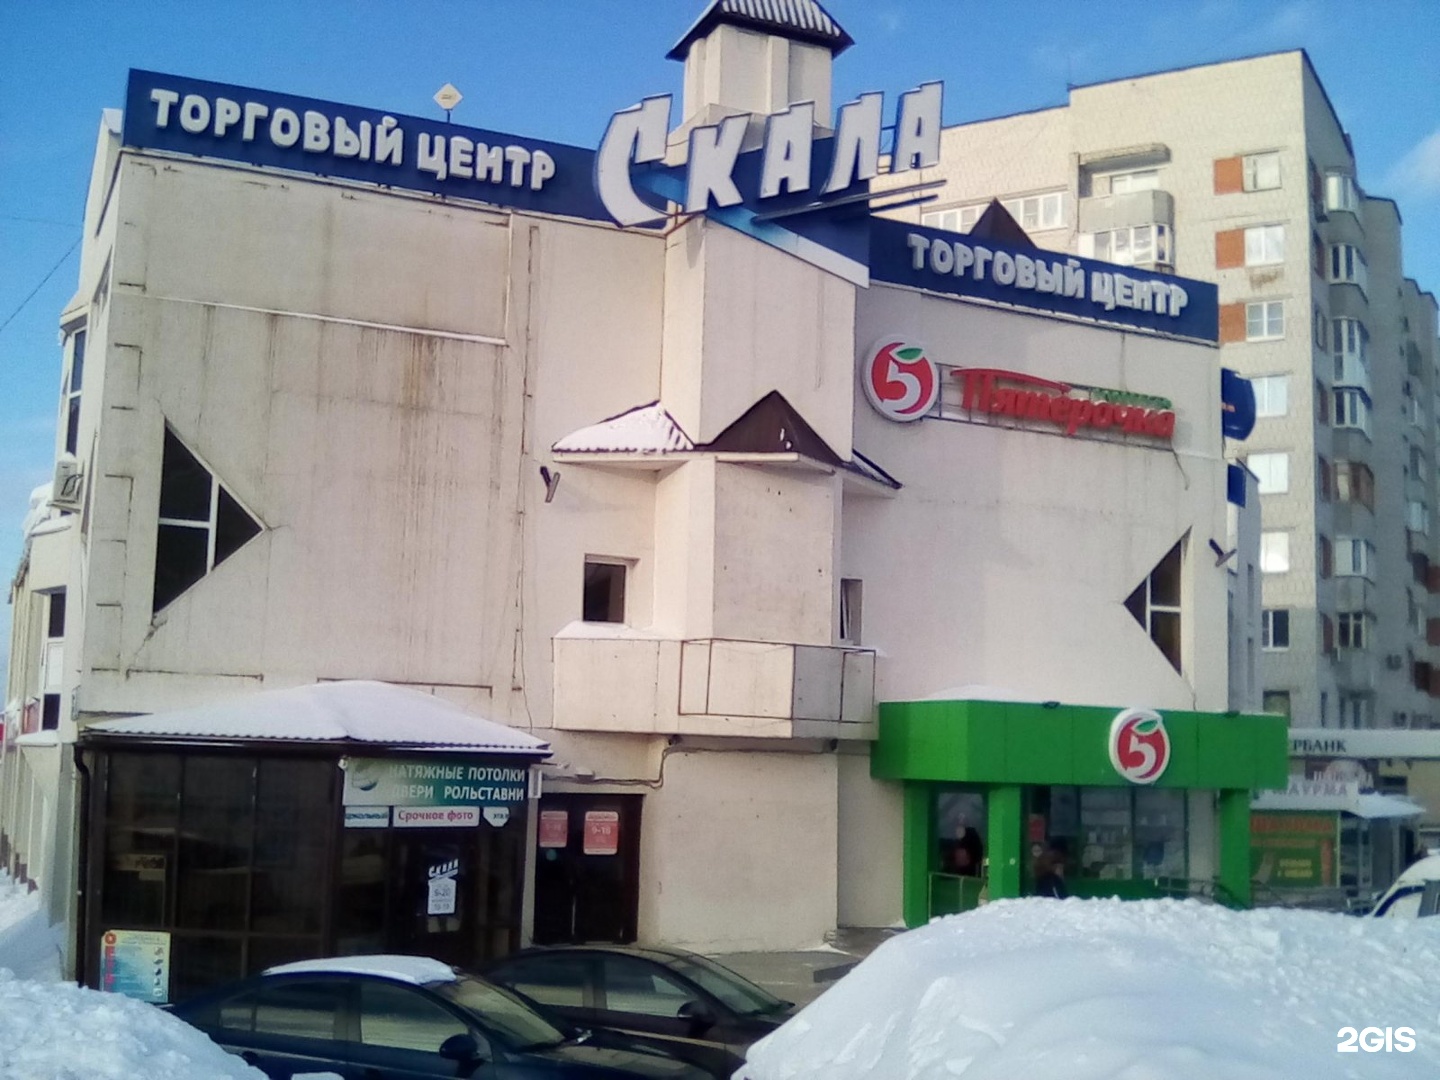 срочное фото чебоксары московский проспект